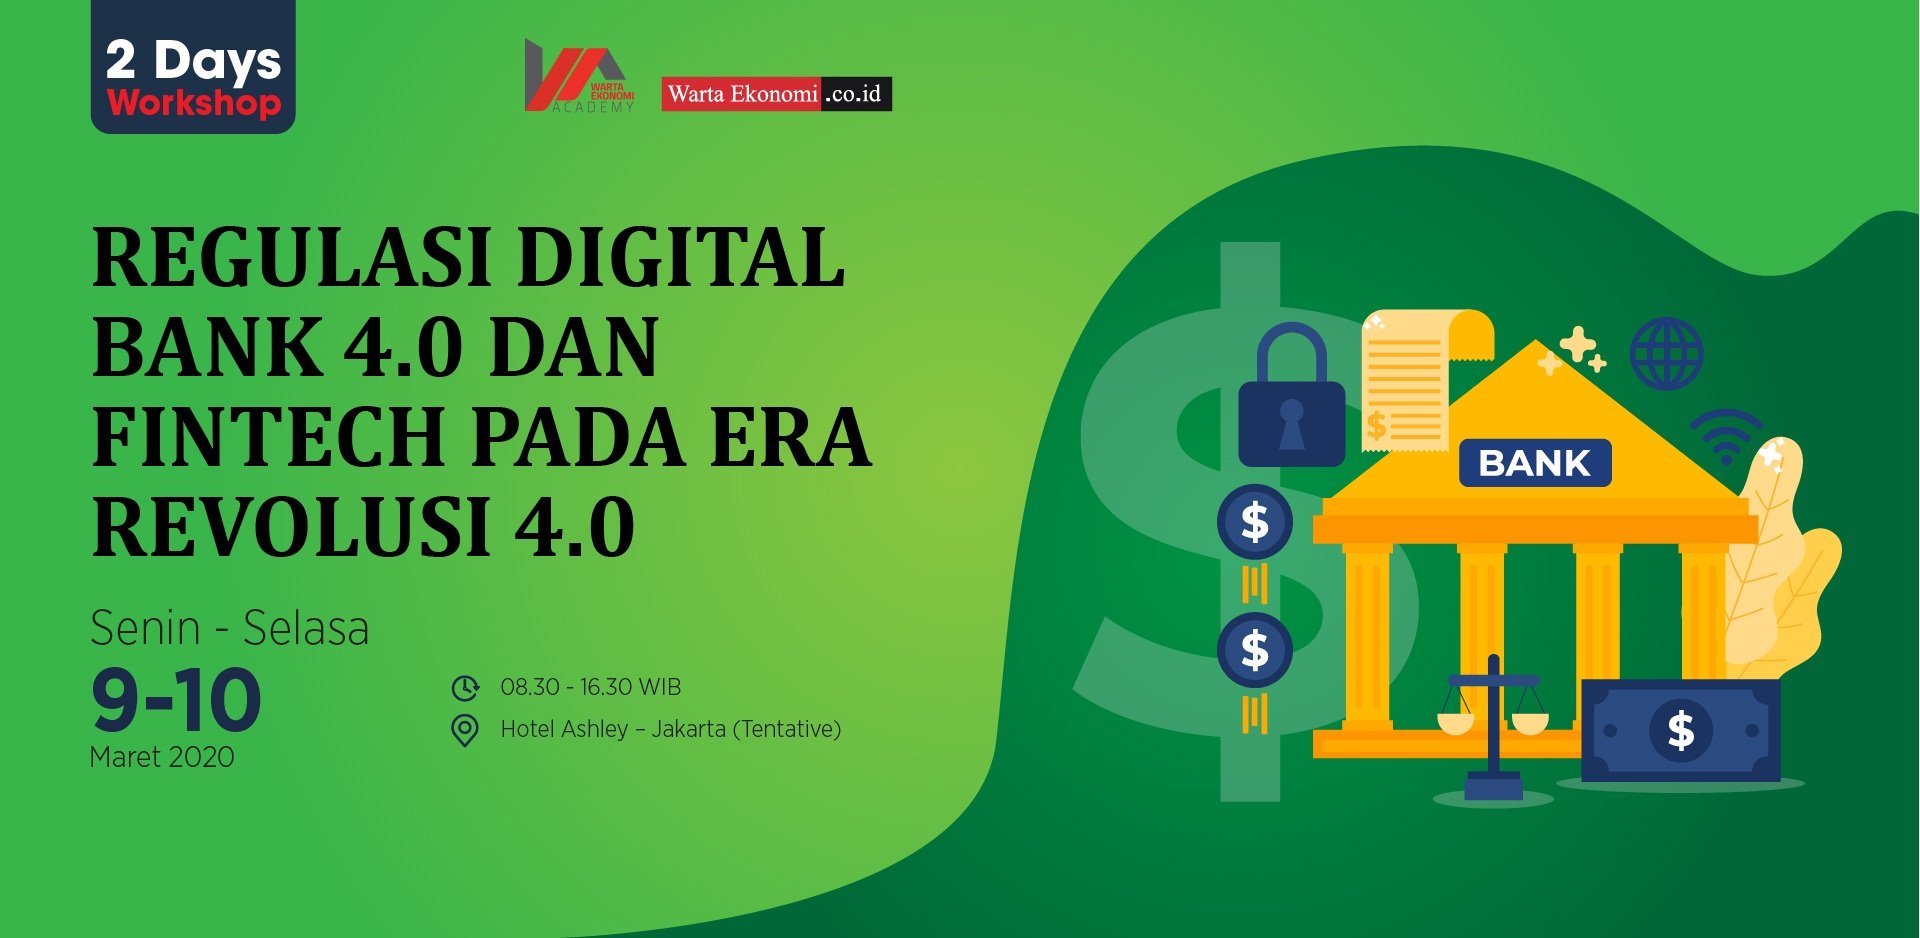 Regulasi Digital Bank 4.0 dan Fintech pada Era Revolusi Industri 4.0